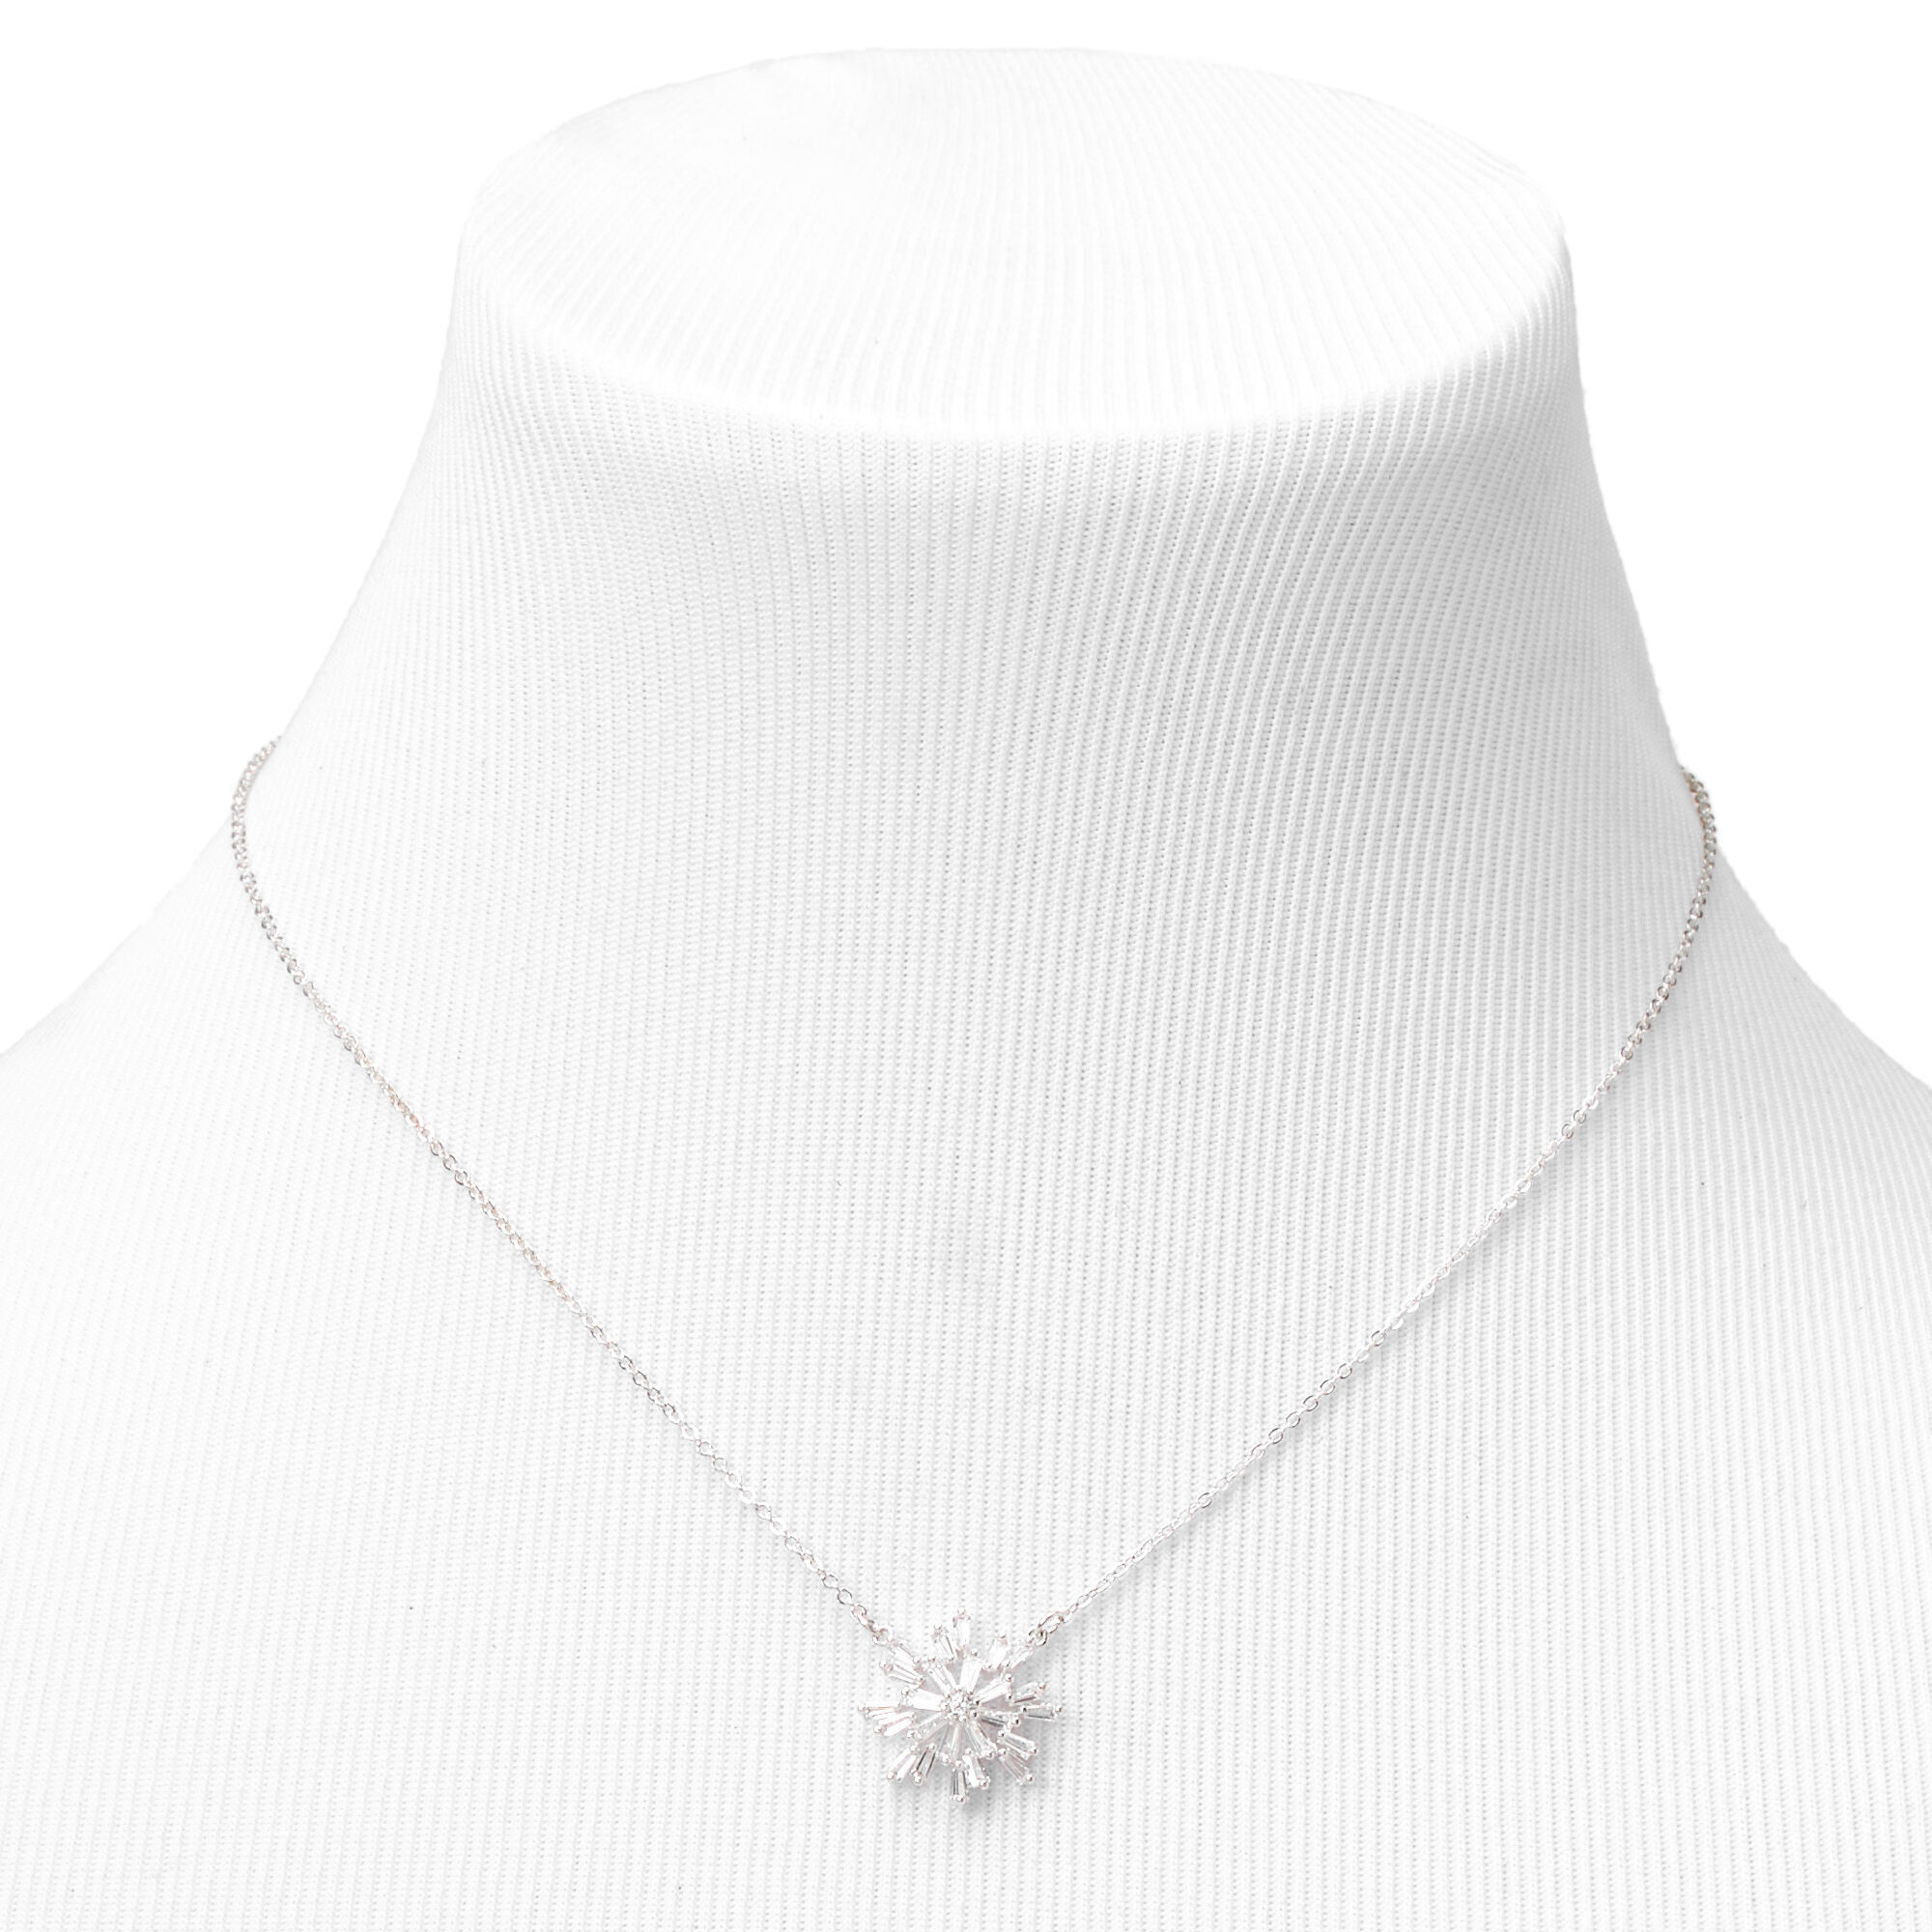 Silver Cubic Zirconia Snowflake Pendant Necklace